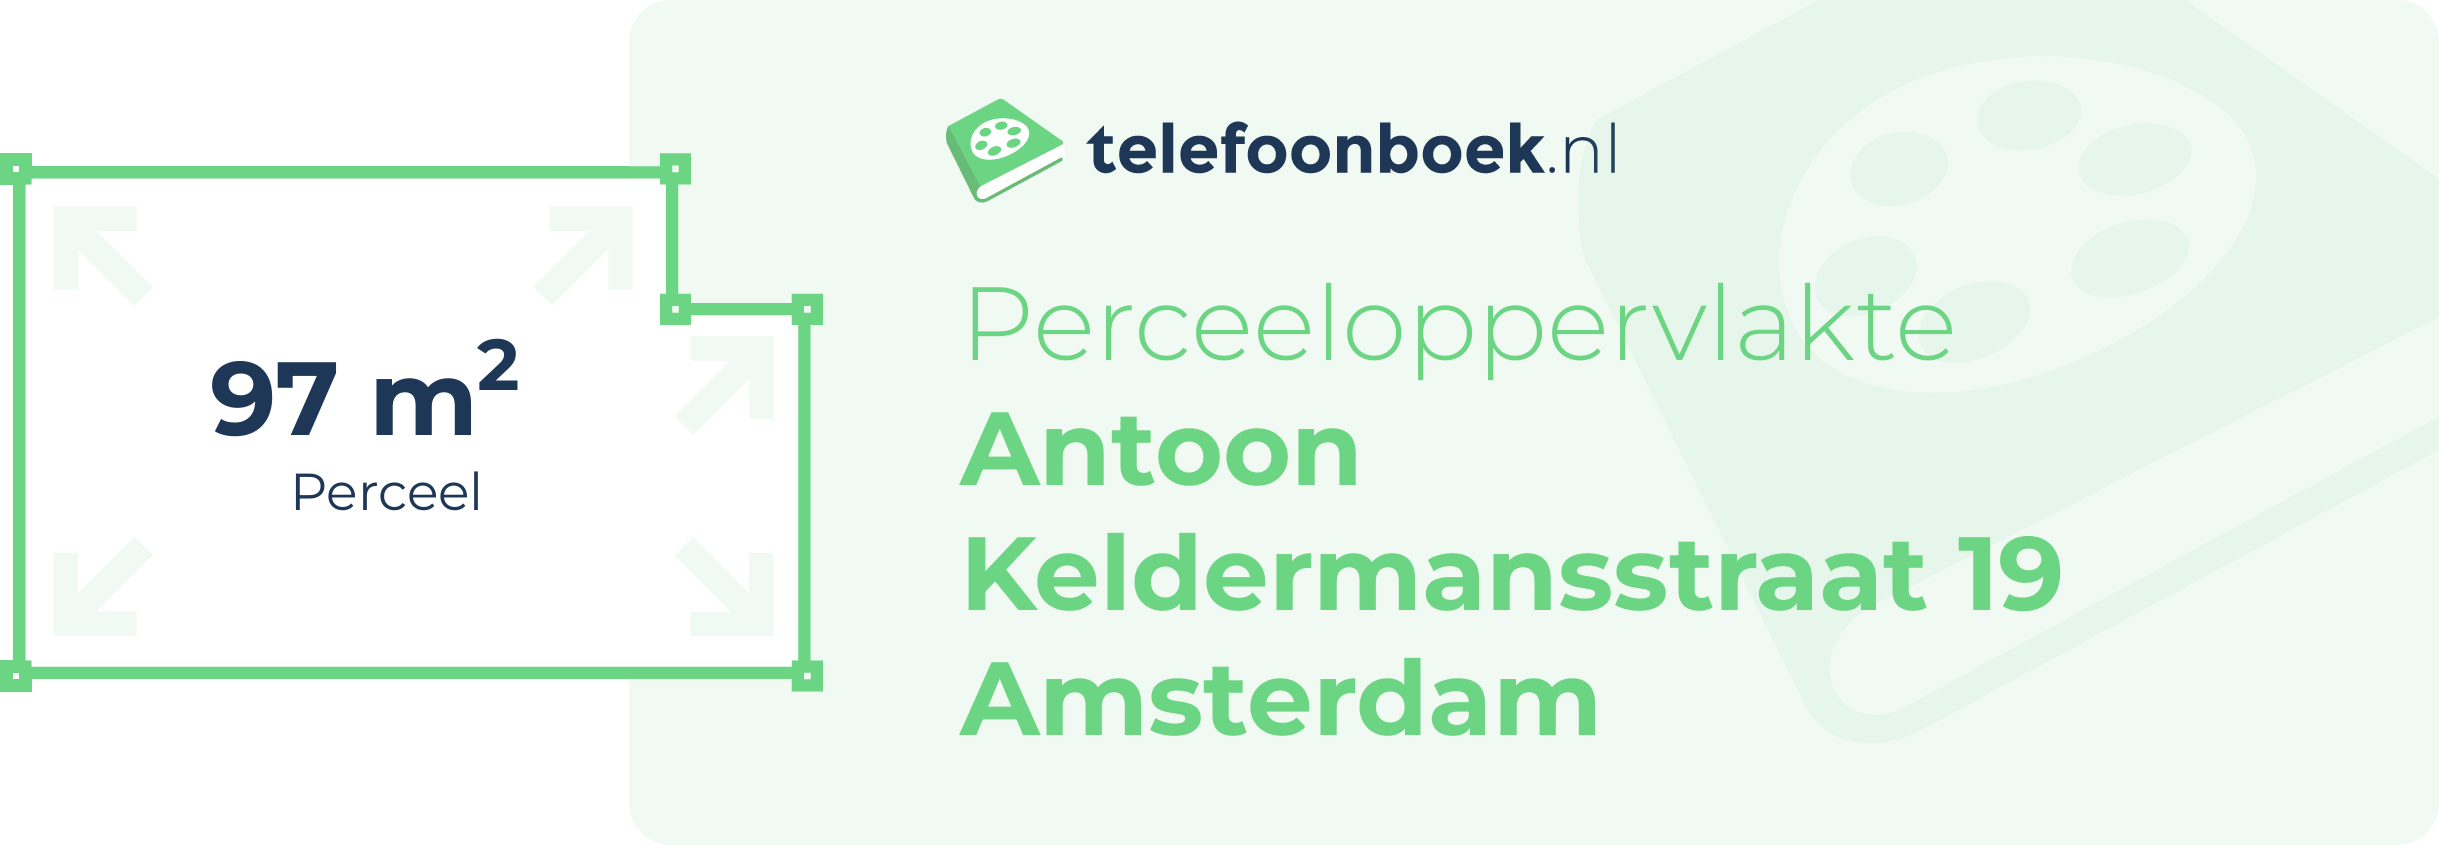 Perceeloppervlakte Antoon Keldermansstraat 19 Amsterdam